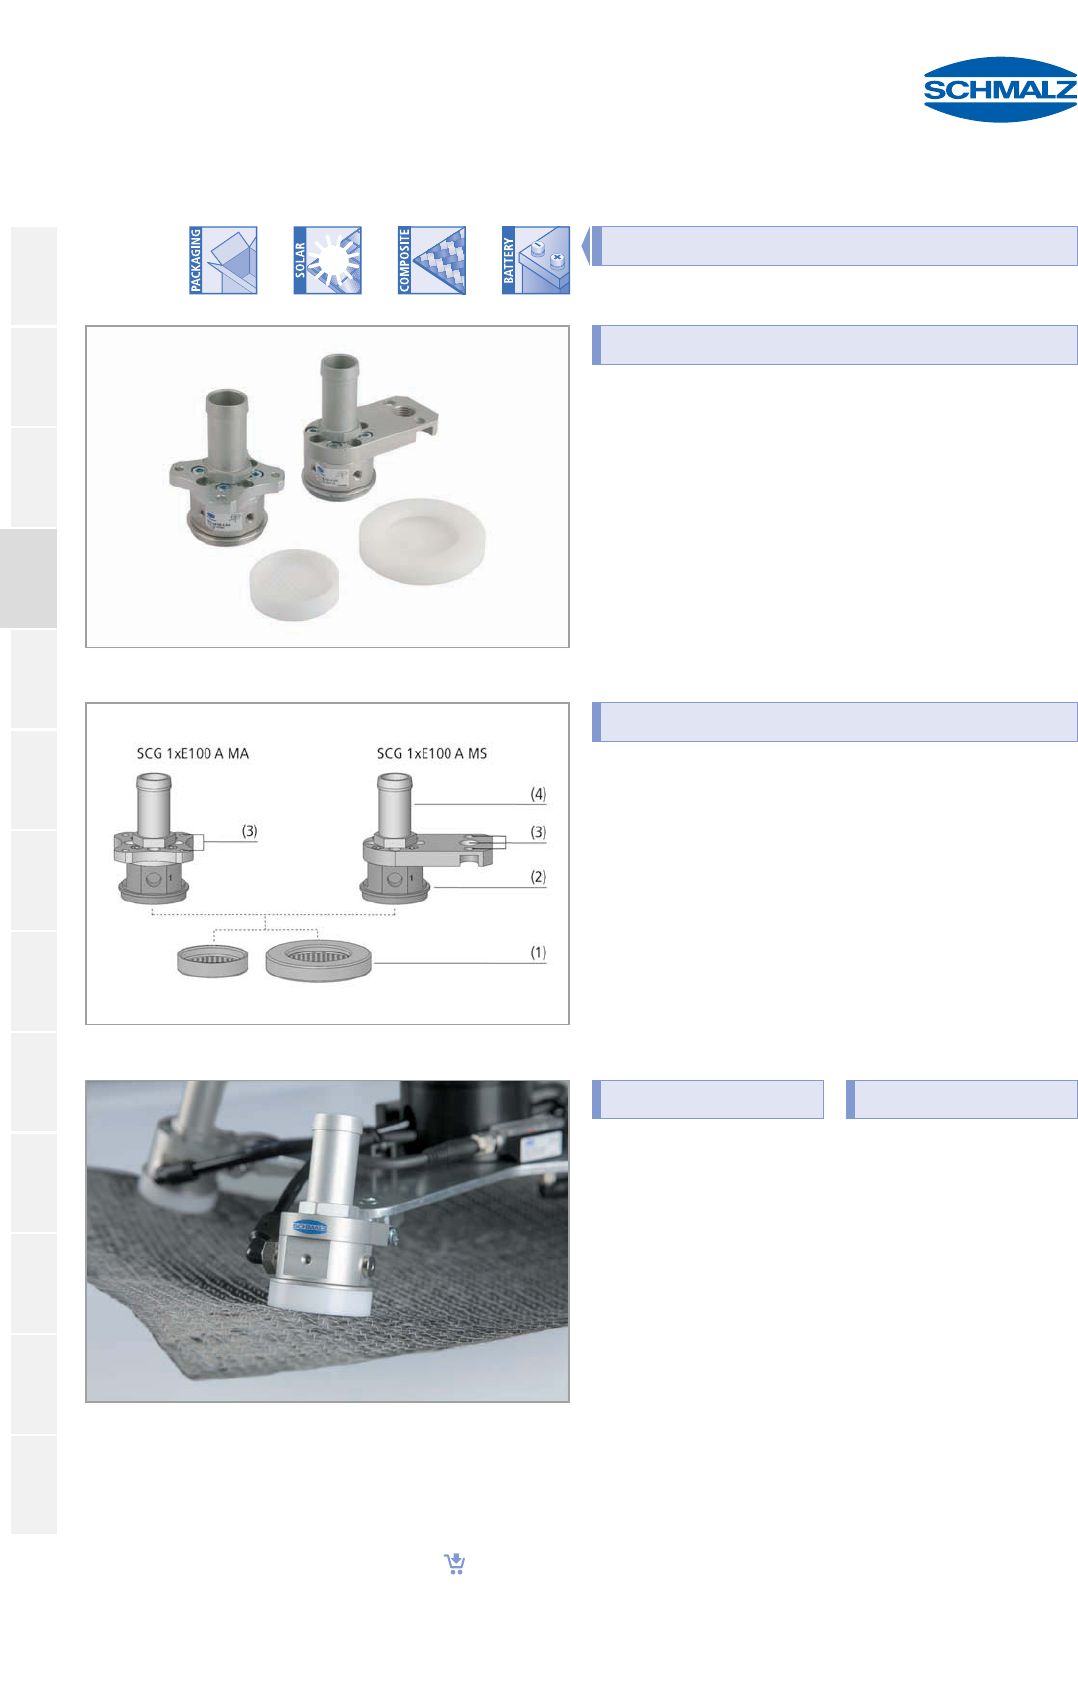 Download Flow Schmalz Composite Grippers Scg 1505494672 User Manual